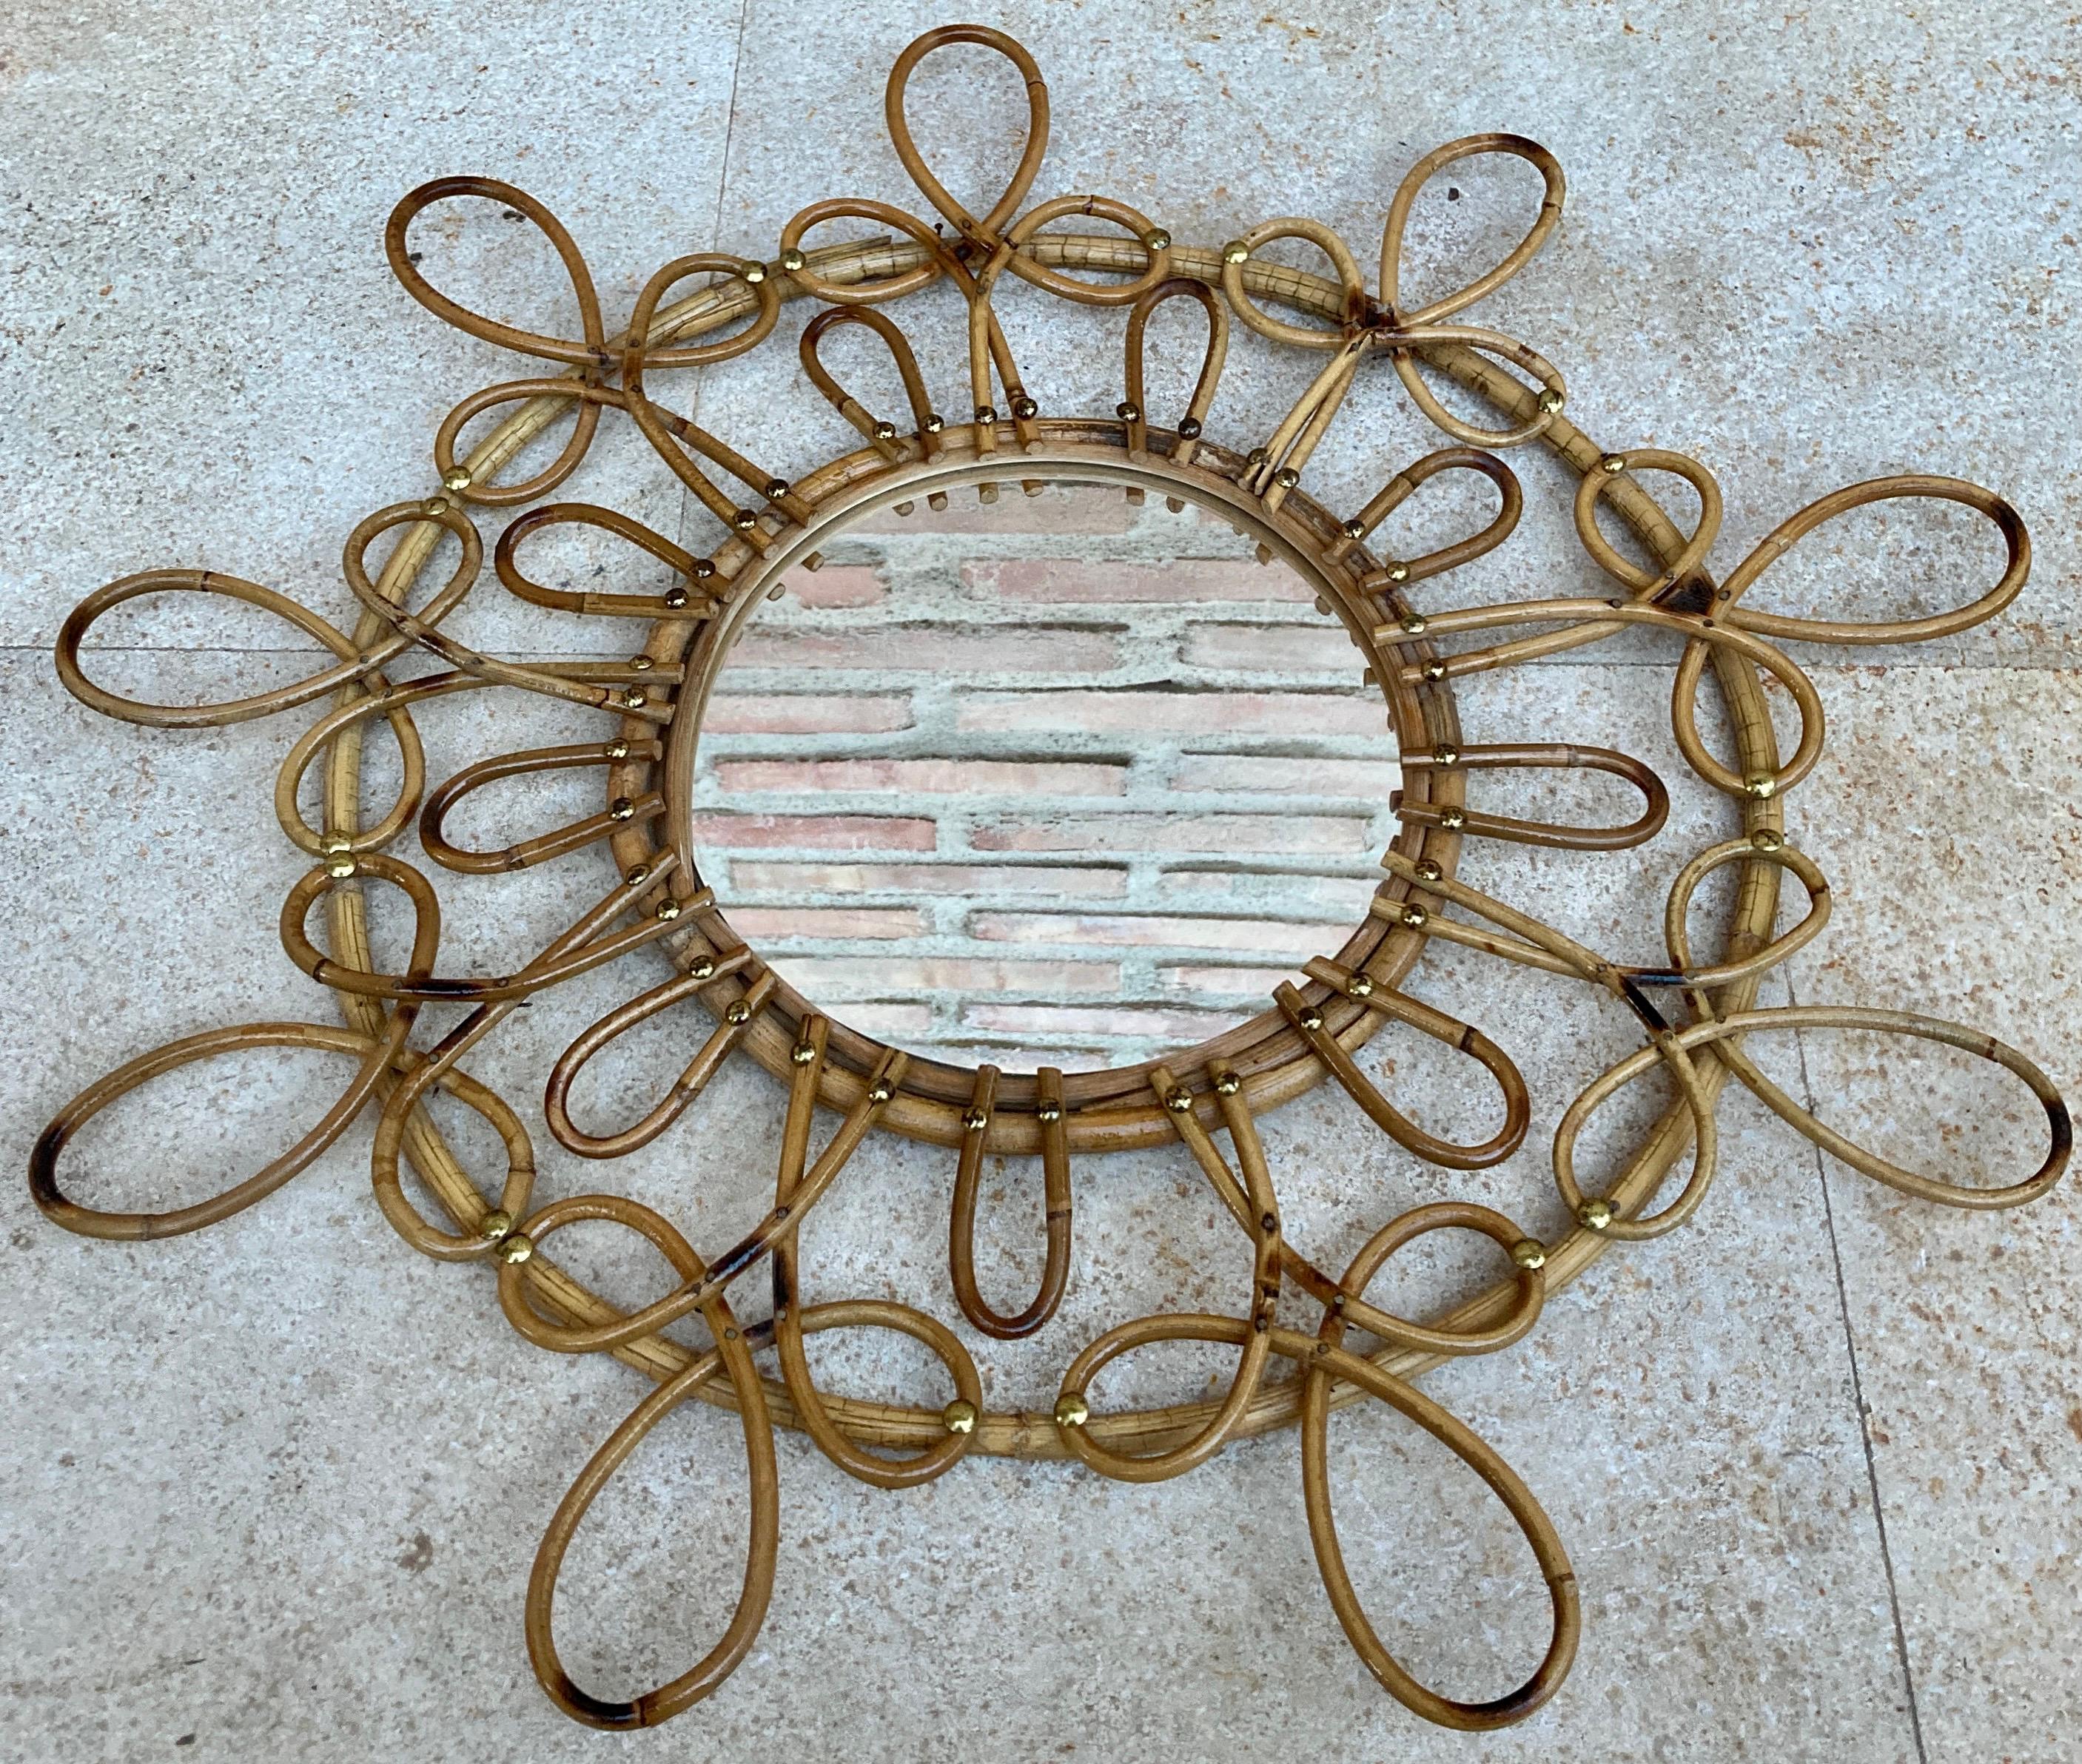 Doppelschichtiger Spiegel aus Rattan in Form einer Sonnenblume. Frankreich, 1960er Jahre. 
Ein schöner, handgefertigter Spiegel in Form einer Rattanblume im mediterranen Stil mit zwei Schichten von Blütenblättern in zwei Größen und